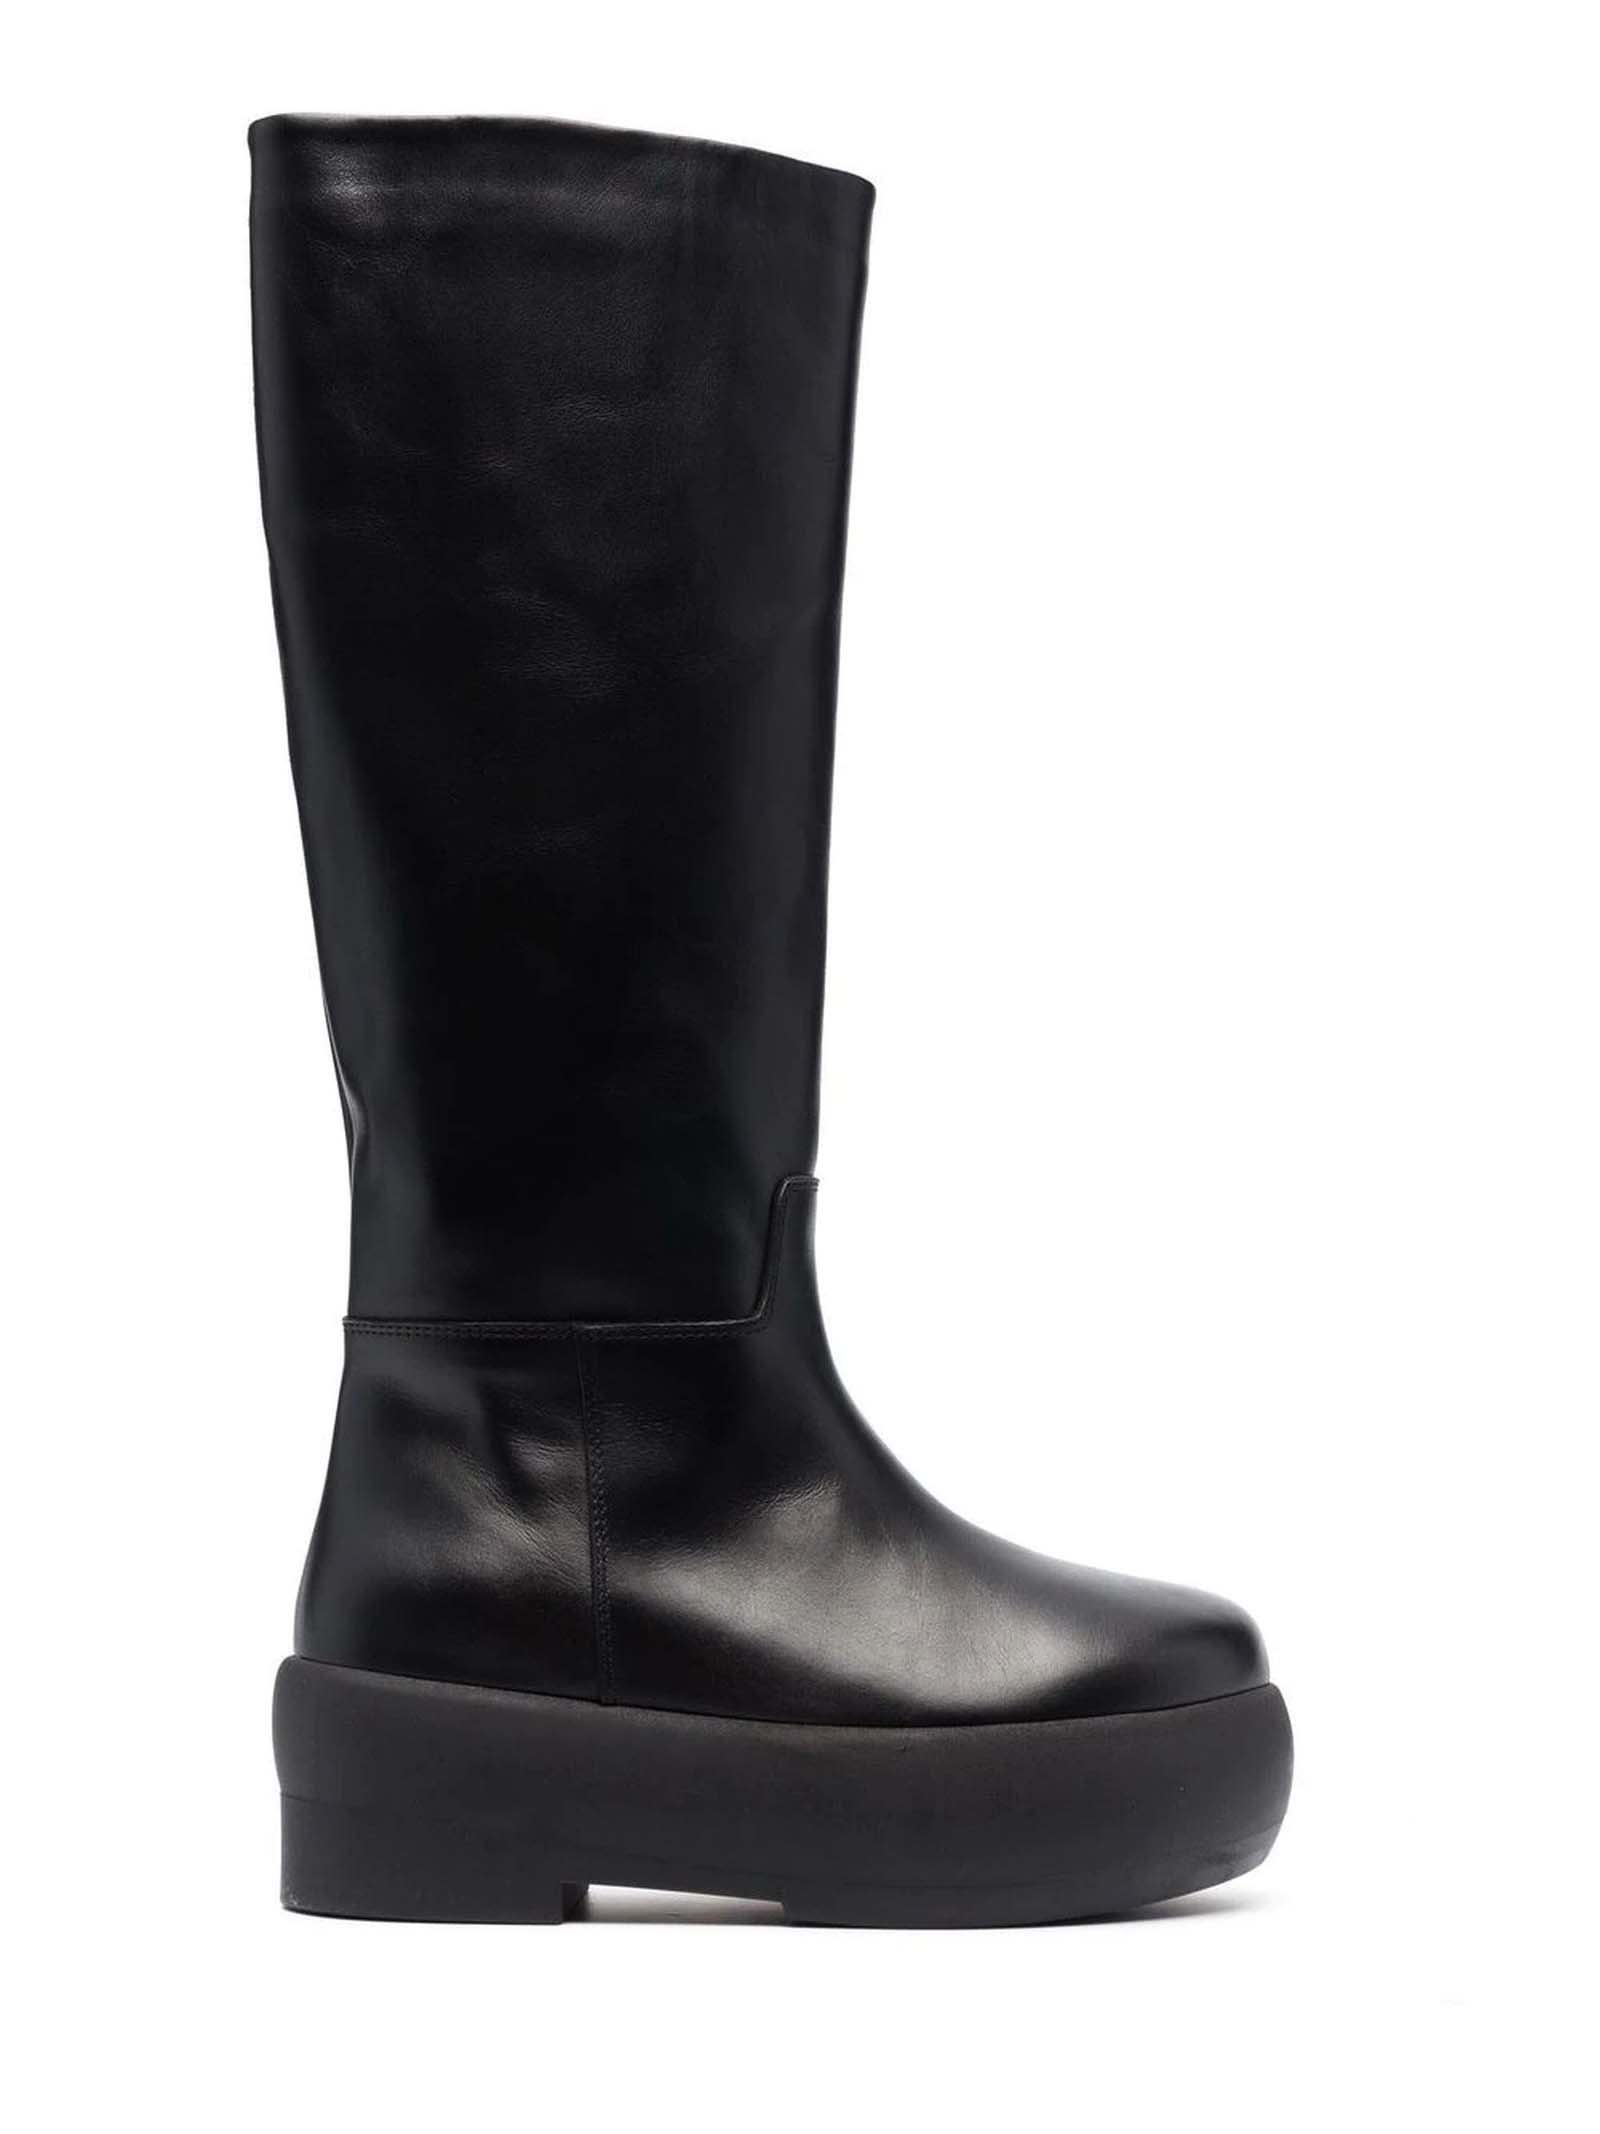 GIA BORGHINI Black Calf Leather Boots